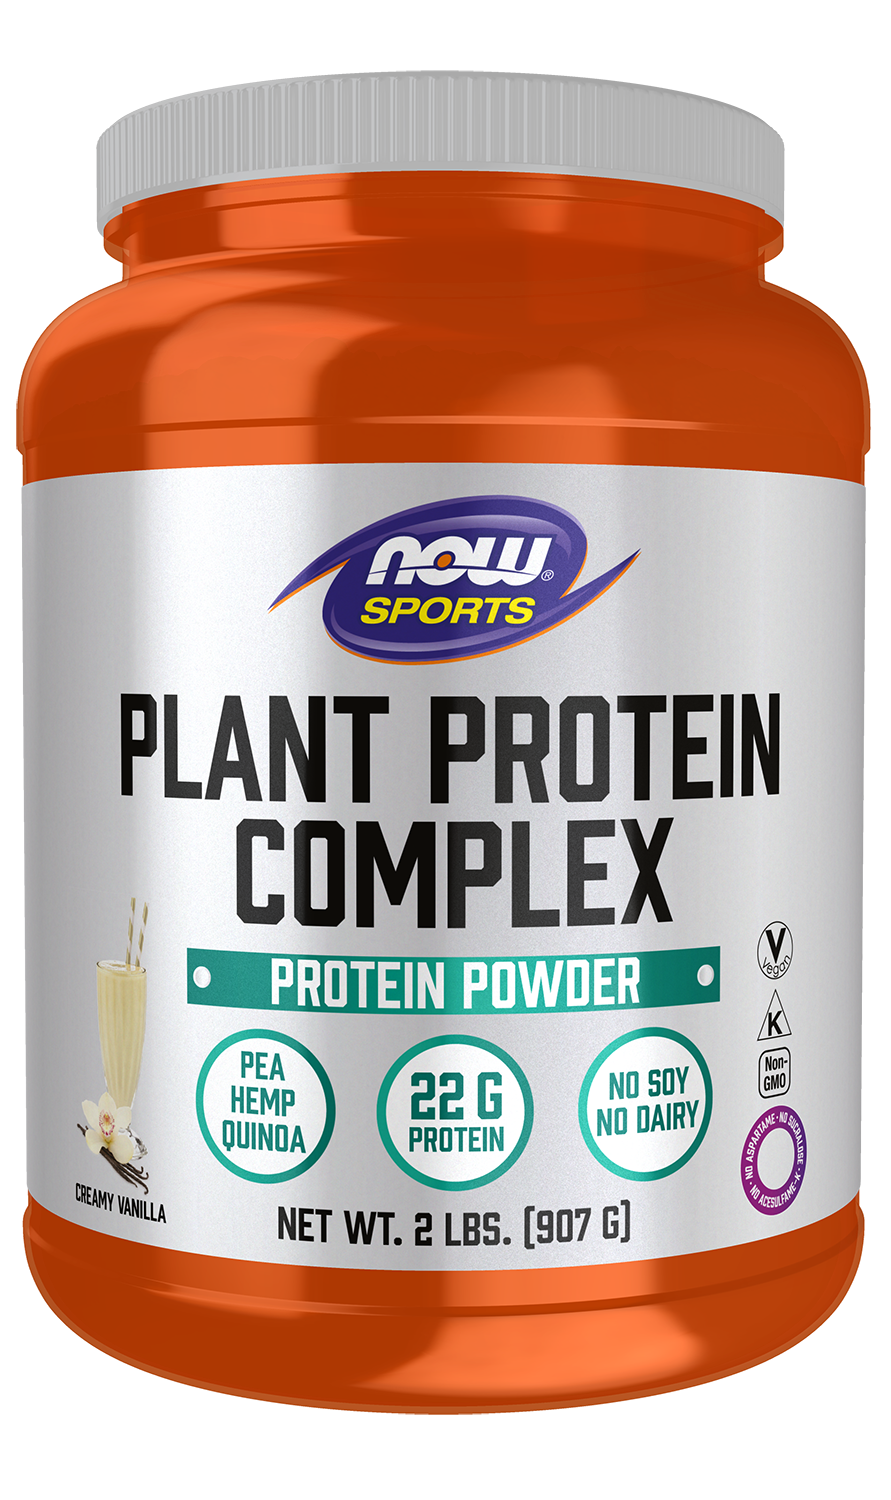 Plant Protein Complex, Creamy Vanilla Powder - 2 lbs. bottle front